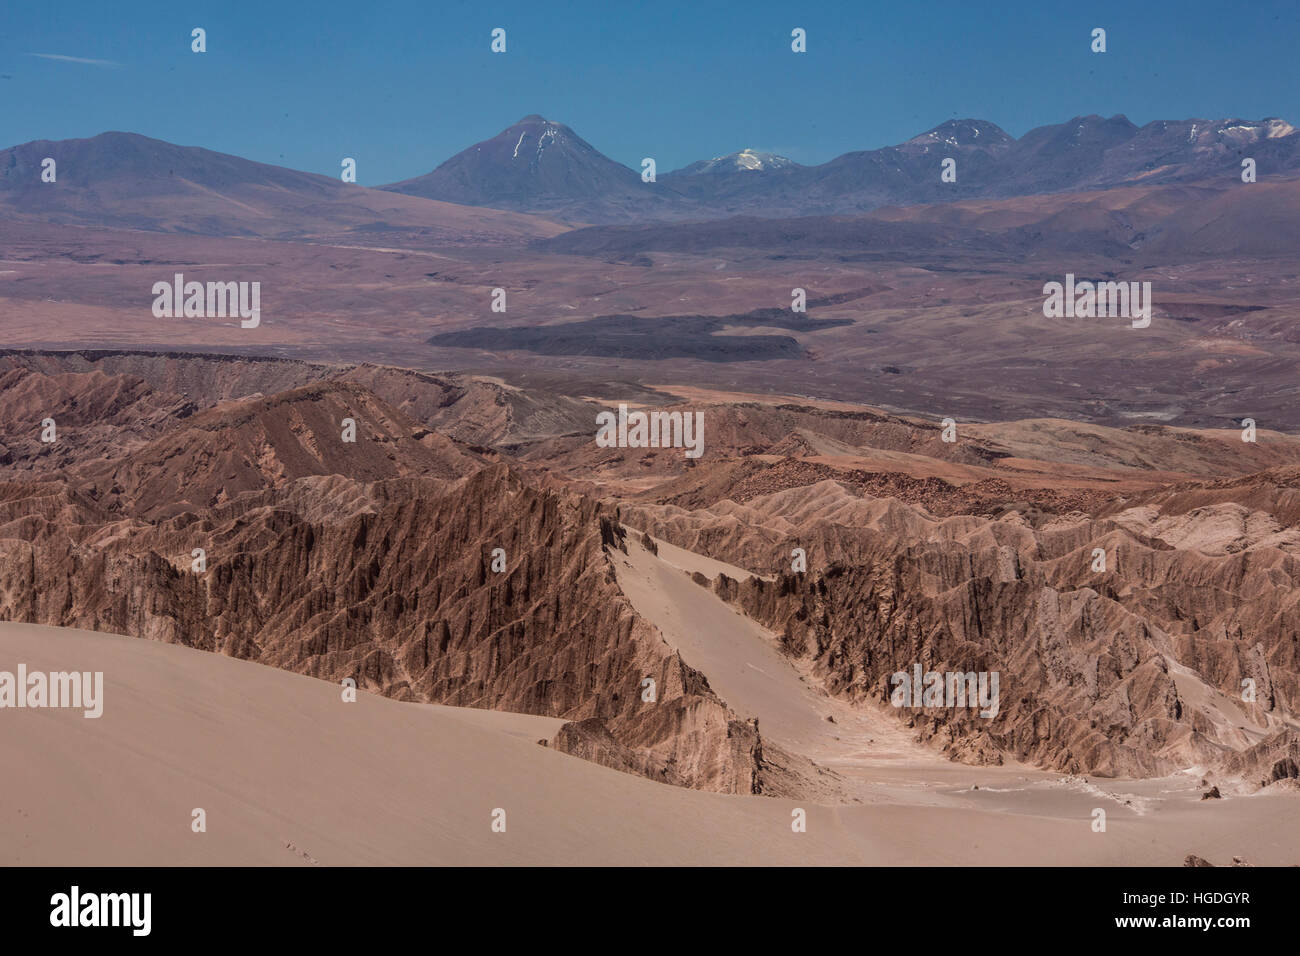 Valle de la Muerte in the Atacama desert, Stock Photo